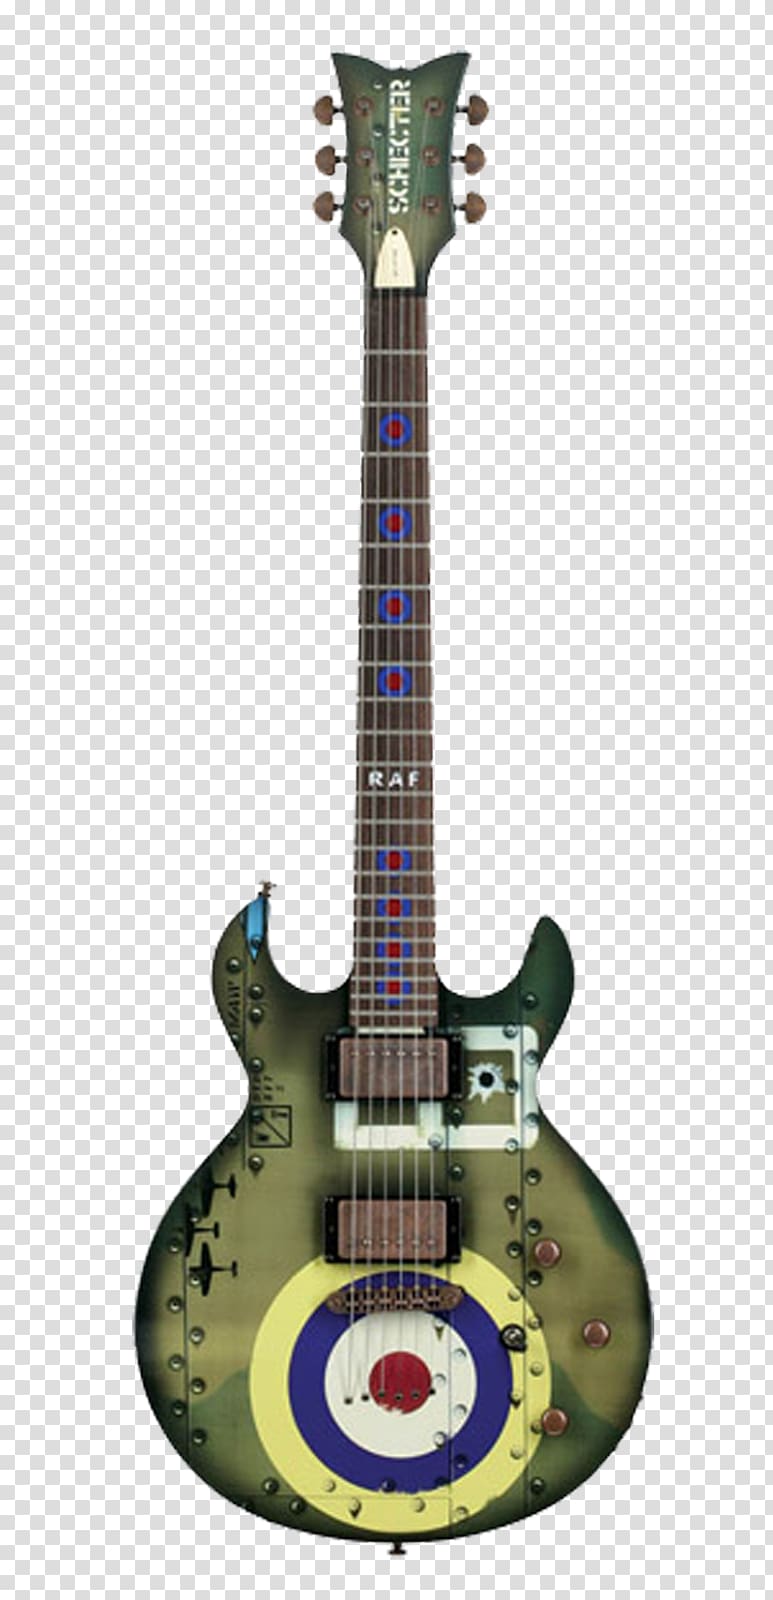 Gibson Les Paul ESP LTD EC-1000 ESP Eclipse Electric guitar, mahogany color transparent background PNG clipart